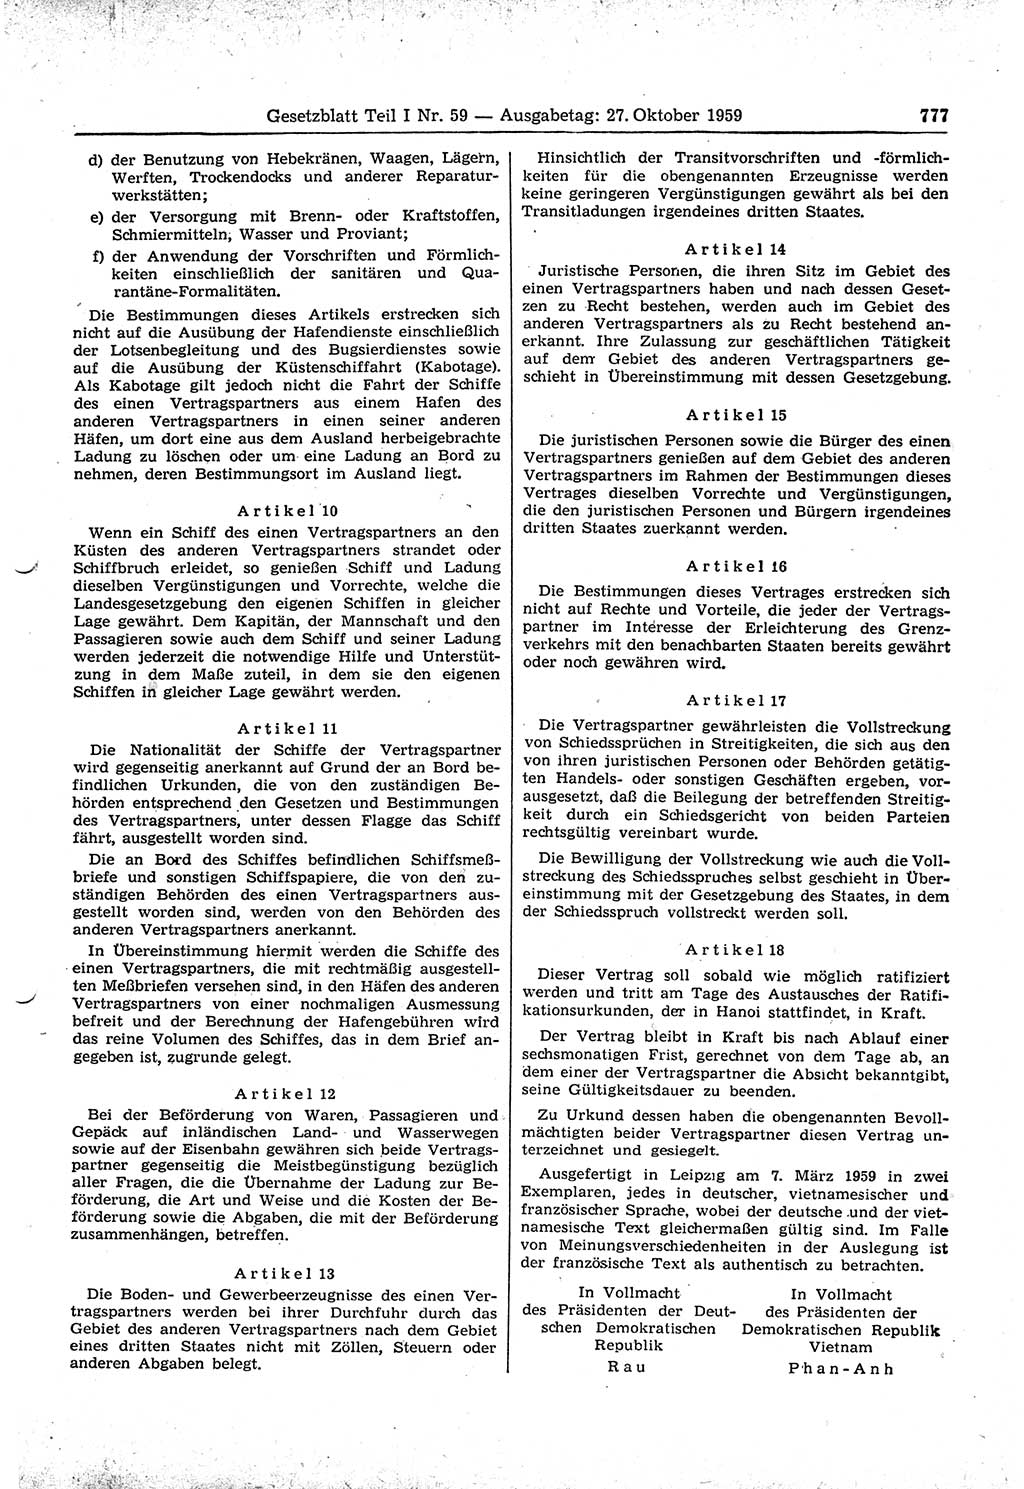 Gesetzblatt (GBl.) der Deutschen Demokratischen Republik (DDR) Teil Ⅰ 1959, Seite 777 (GBl. DDR Ⅰ 1959, S. 777)